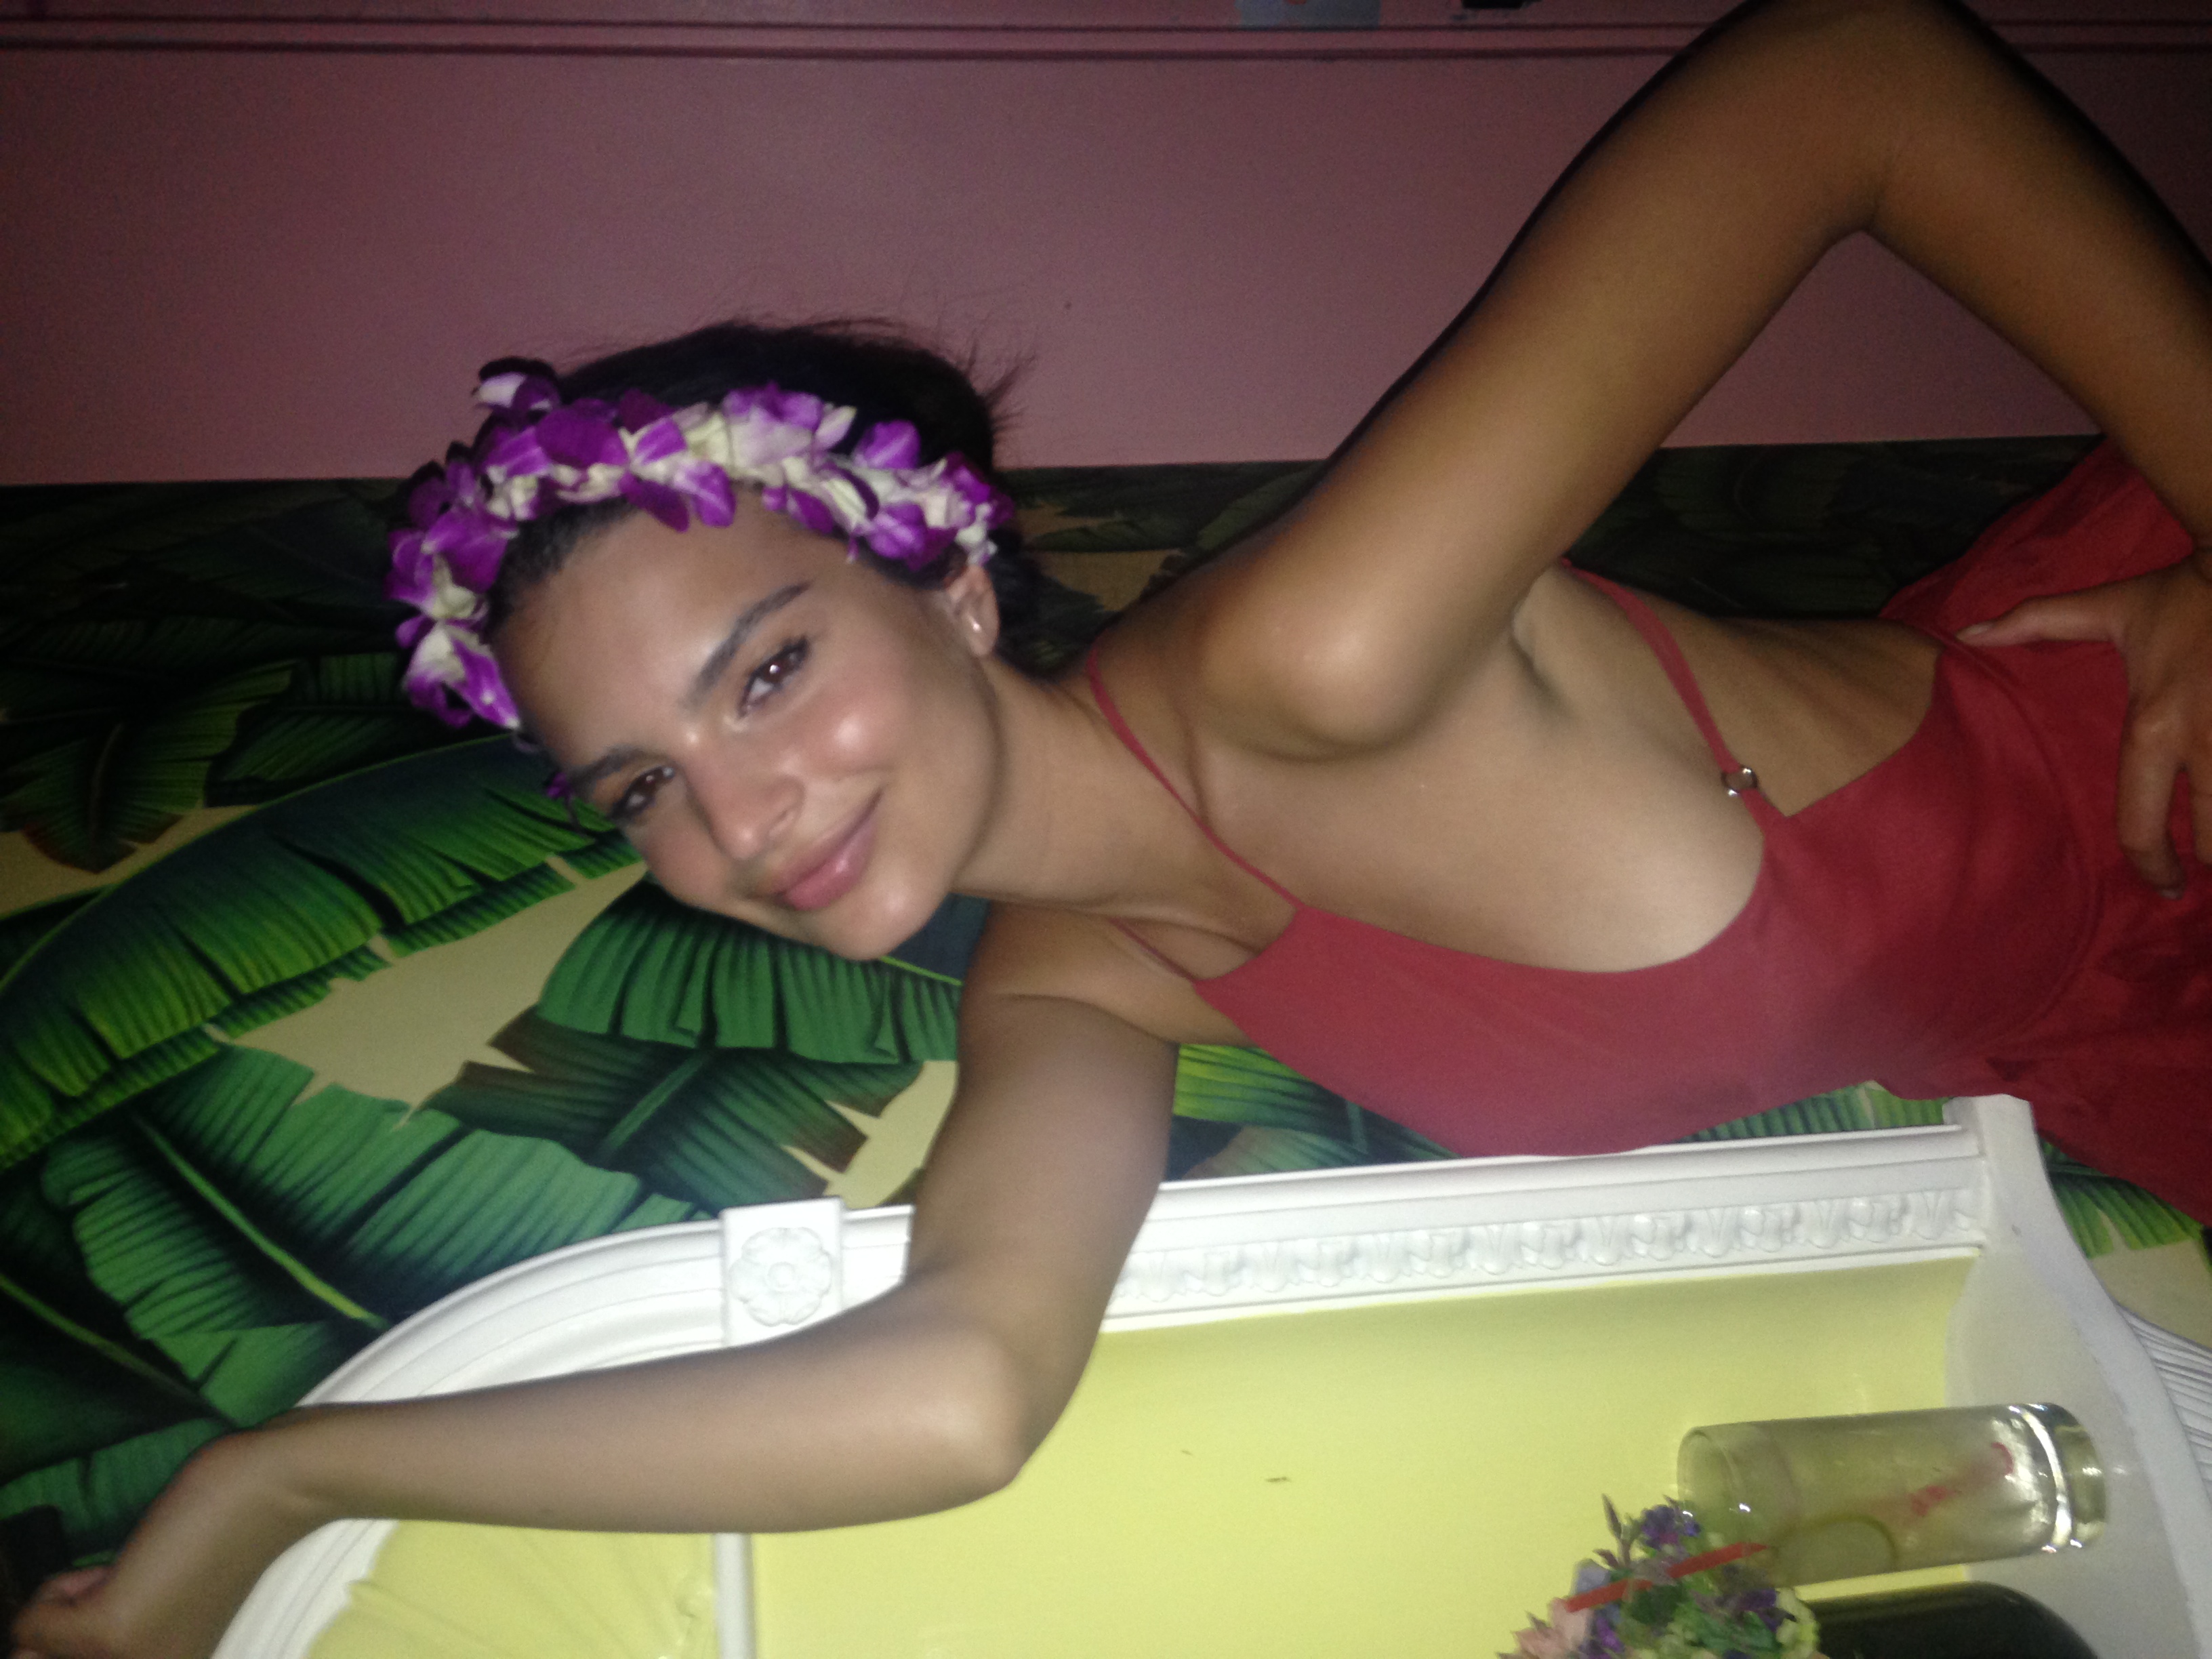  Emily Ratajkowski Naked Celeb IMG_4376 